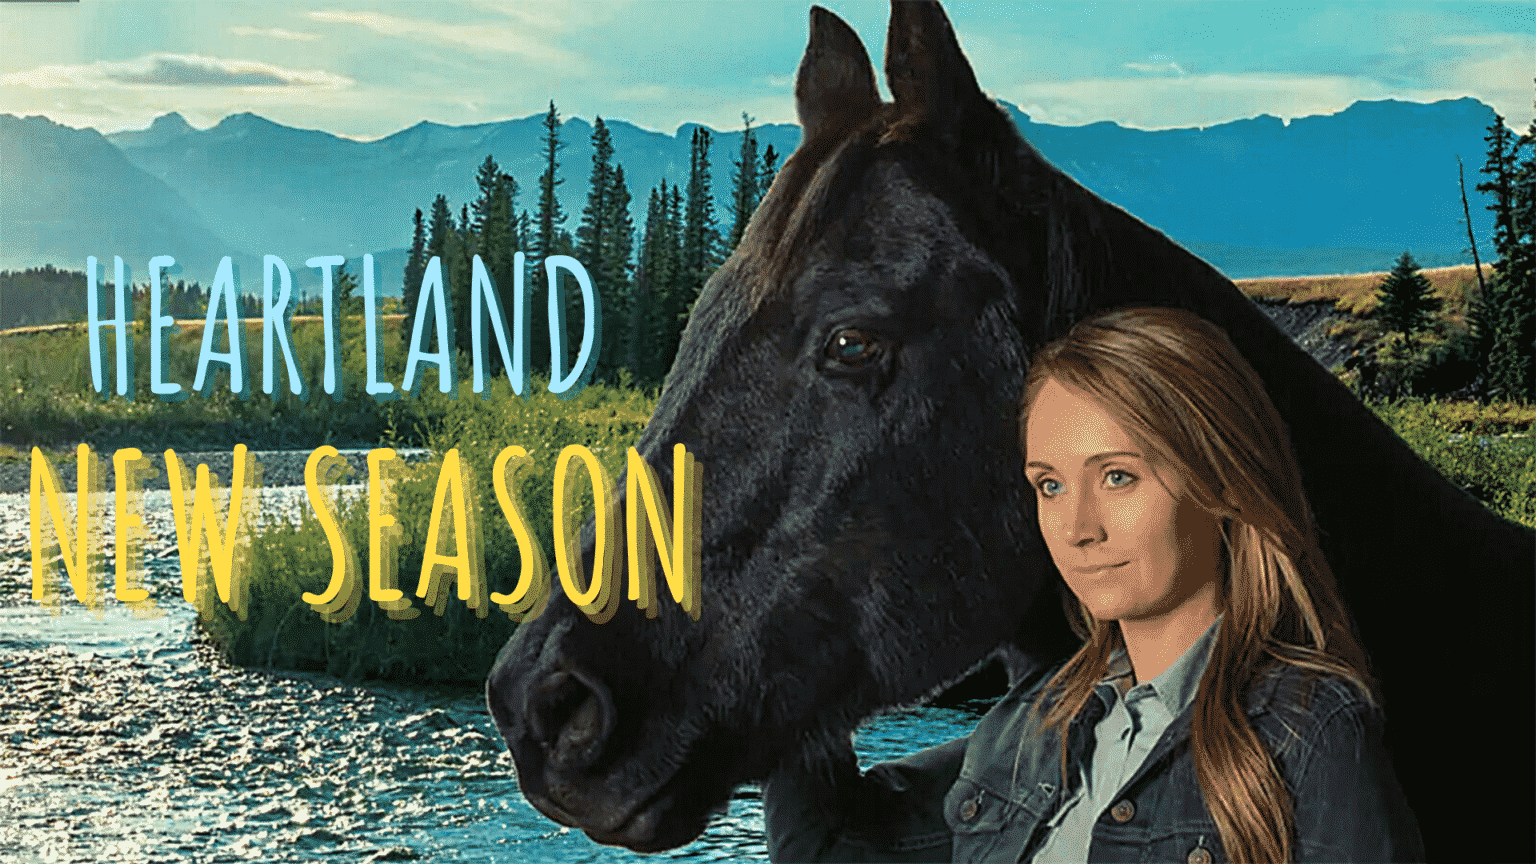 heartland season 14 episode 1 review